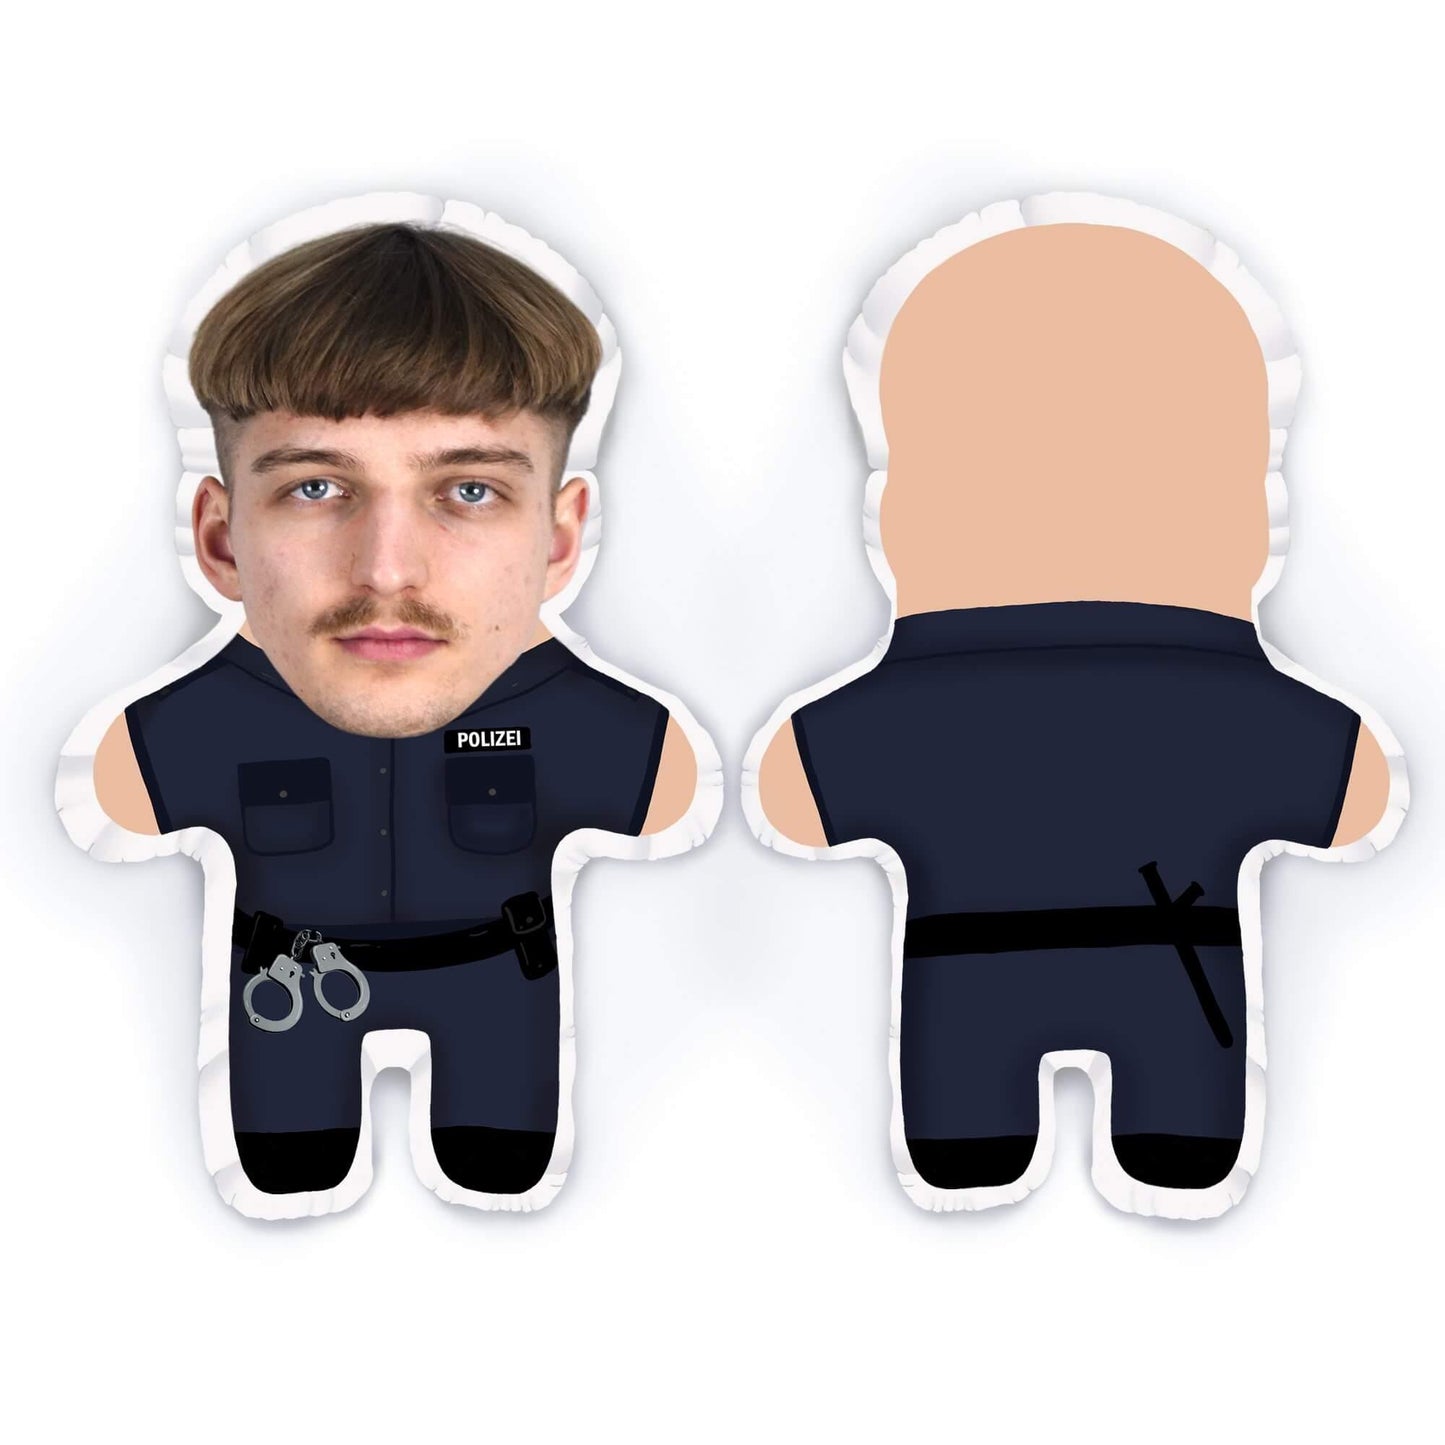 Personalisierbare Mini Me Doll Polizist - Dein Lieblingskissen - Personalisierte Formkissen